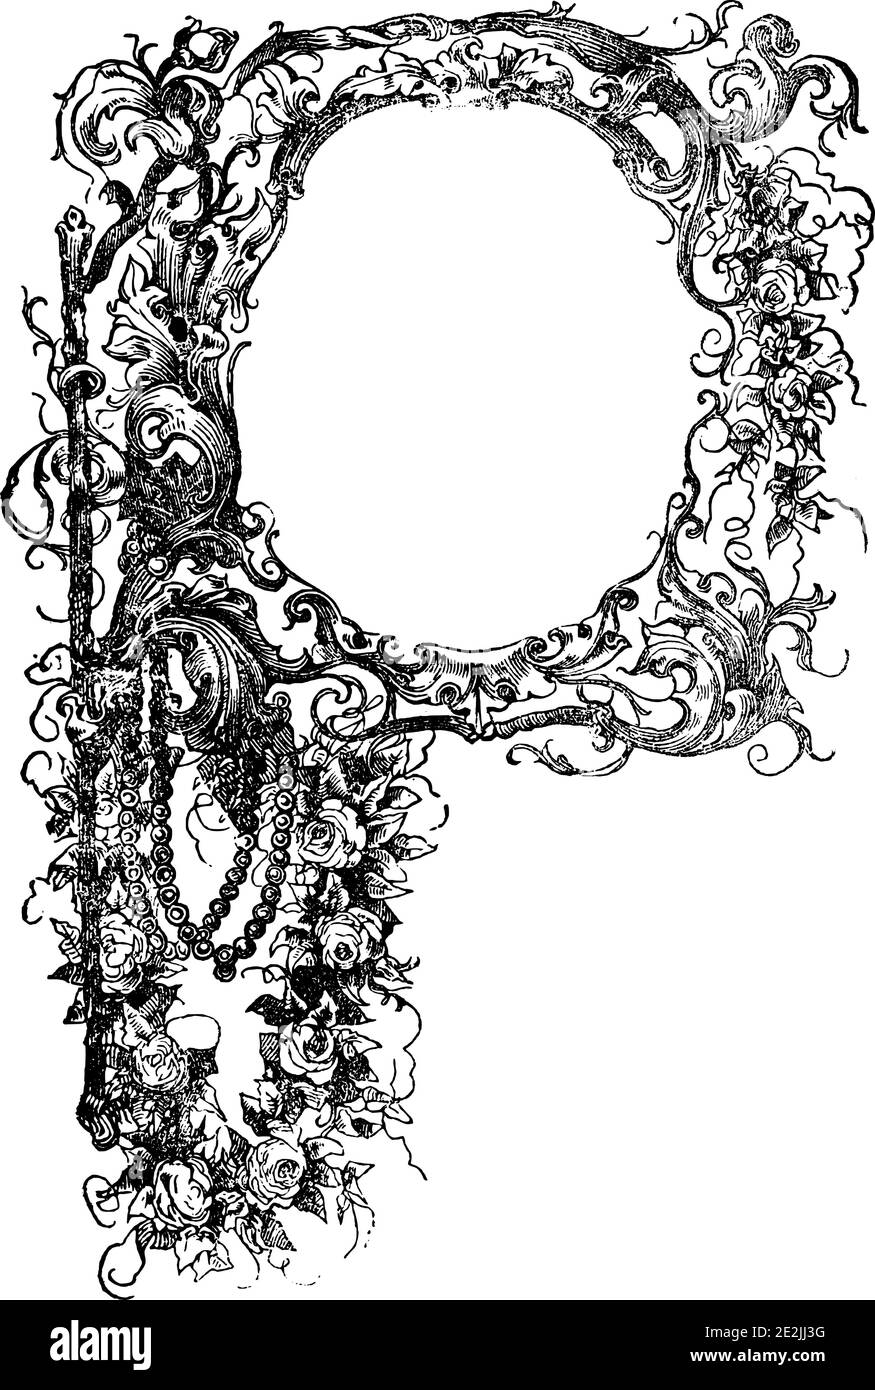 Cornice decorativa ornamentale floreale o maiuscola P. incisione o disegno d'epoca d'epoca. Illustrazione Vettoriale